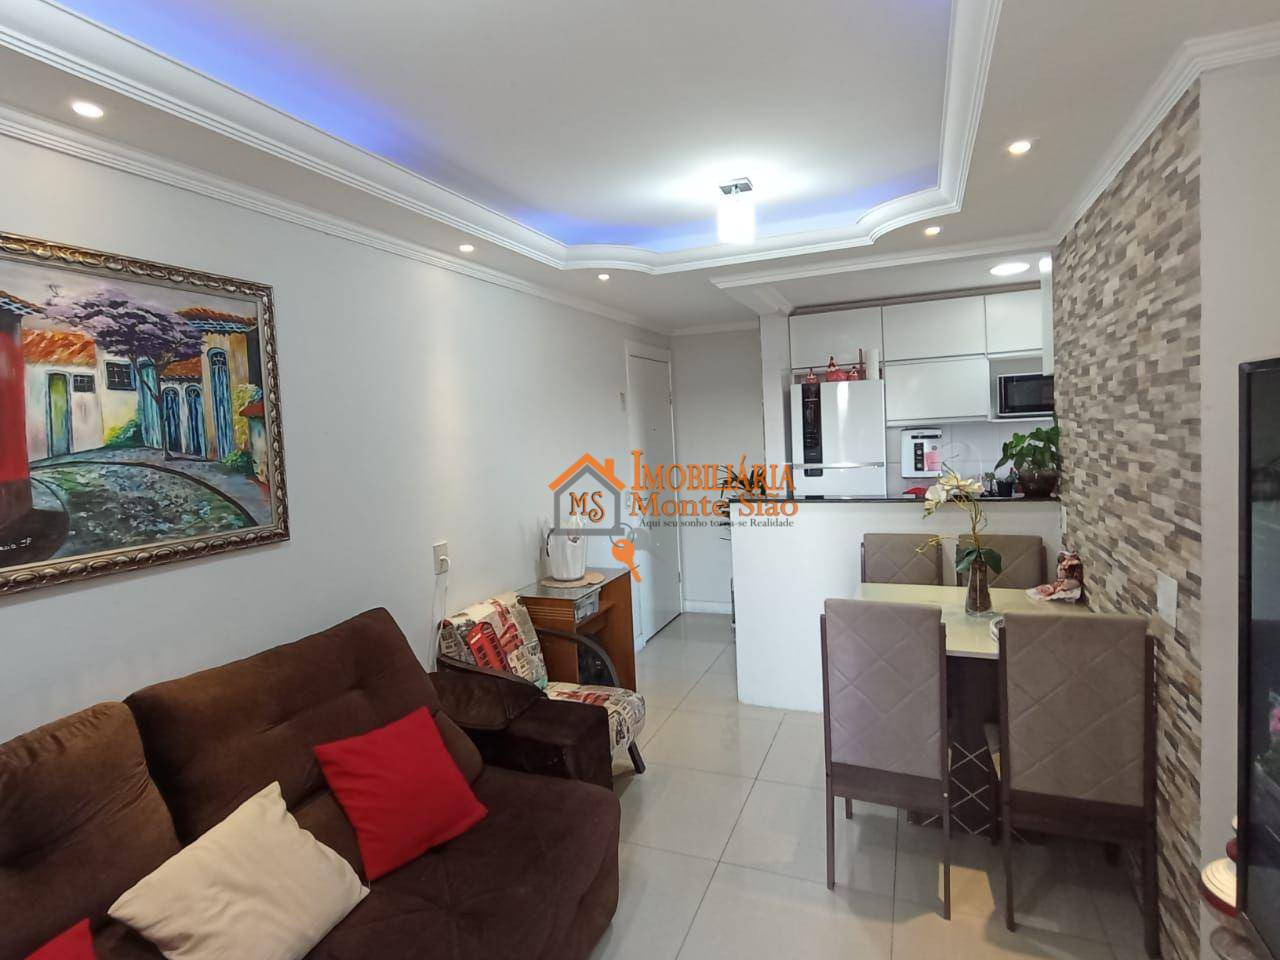 Apartamento com 2 dormitórios à venda, 47 m² por R$ 308.000,00 - Jardim Bela Vista - Guarulhos/SP